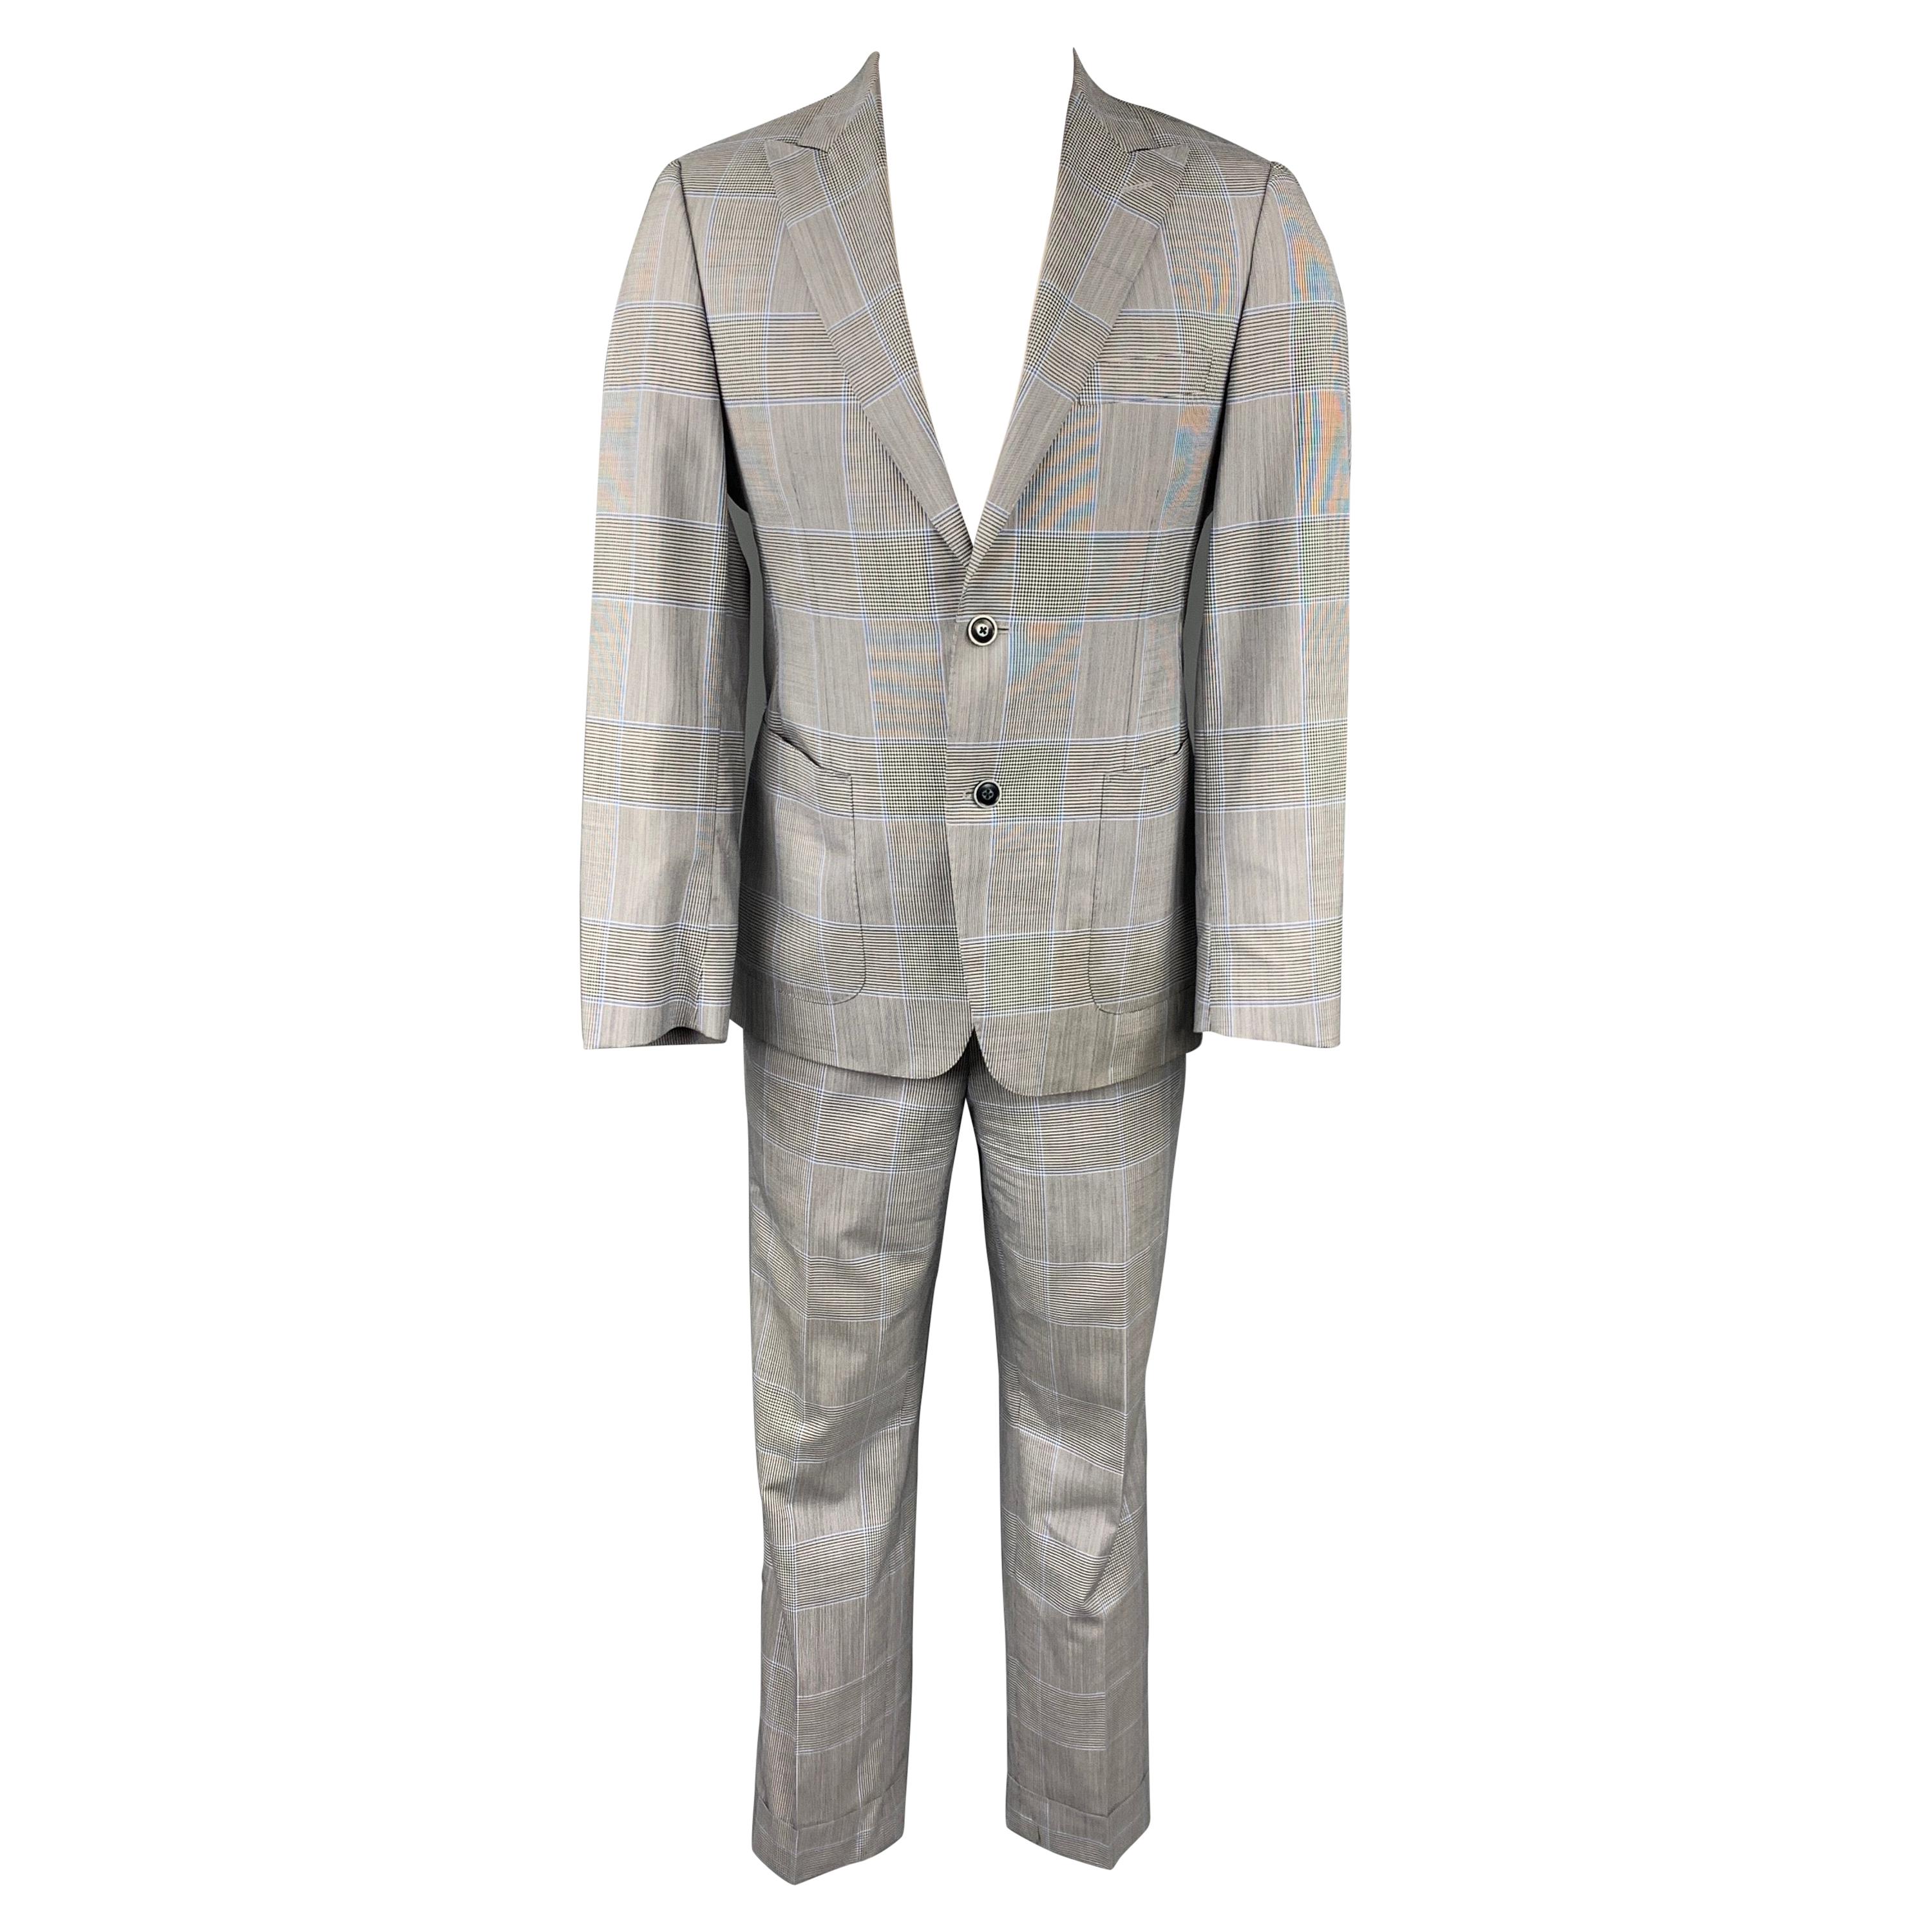 SAMUELSOHN for WILKES BASHFORD Size 38 Regular Grey & Blue Glenplaid Suit